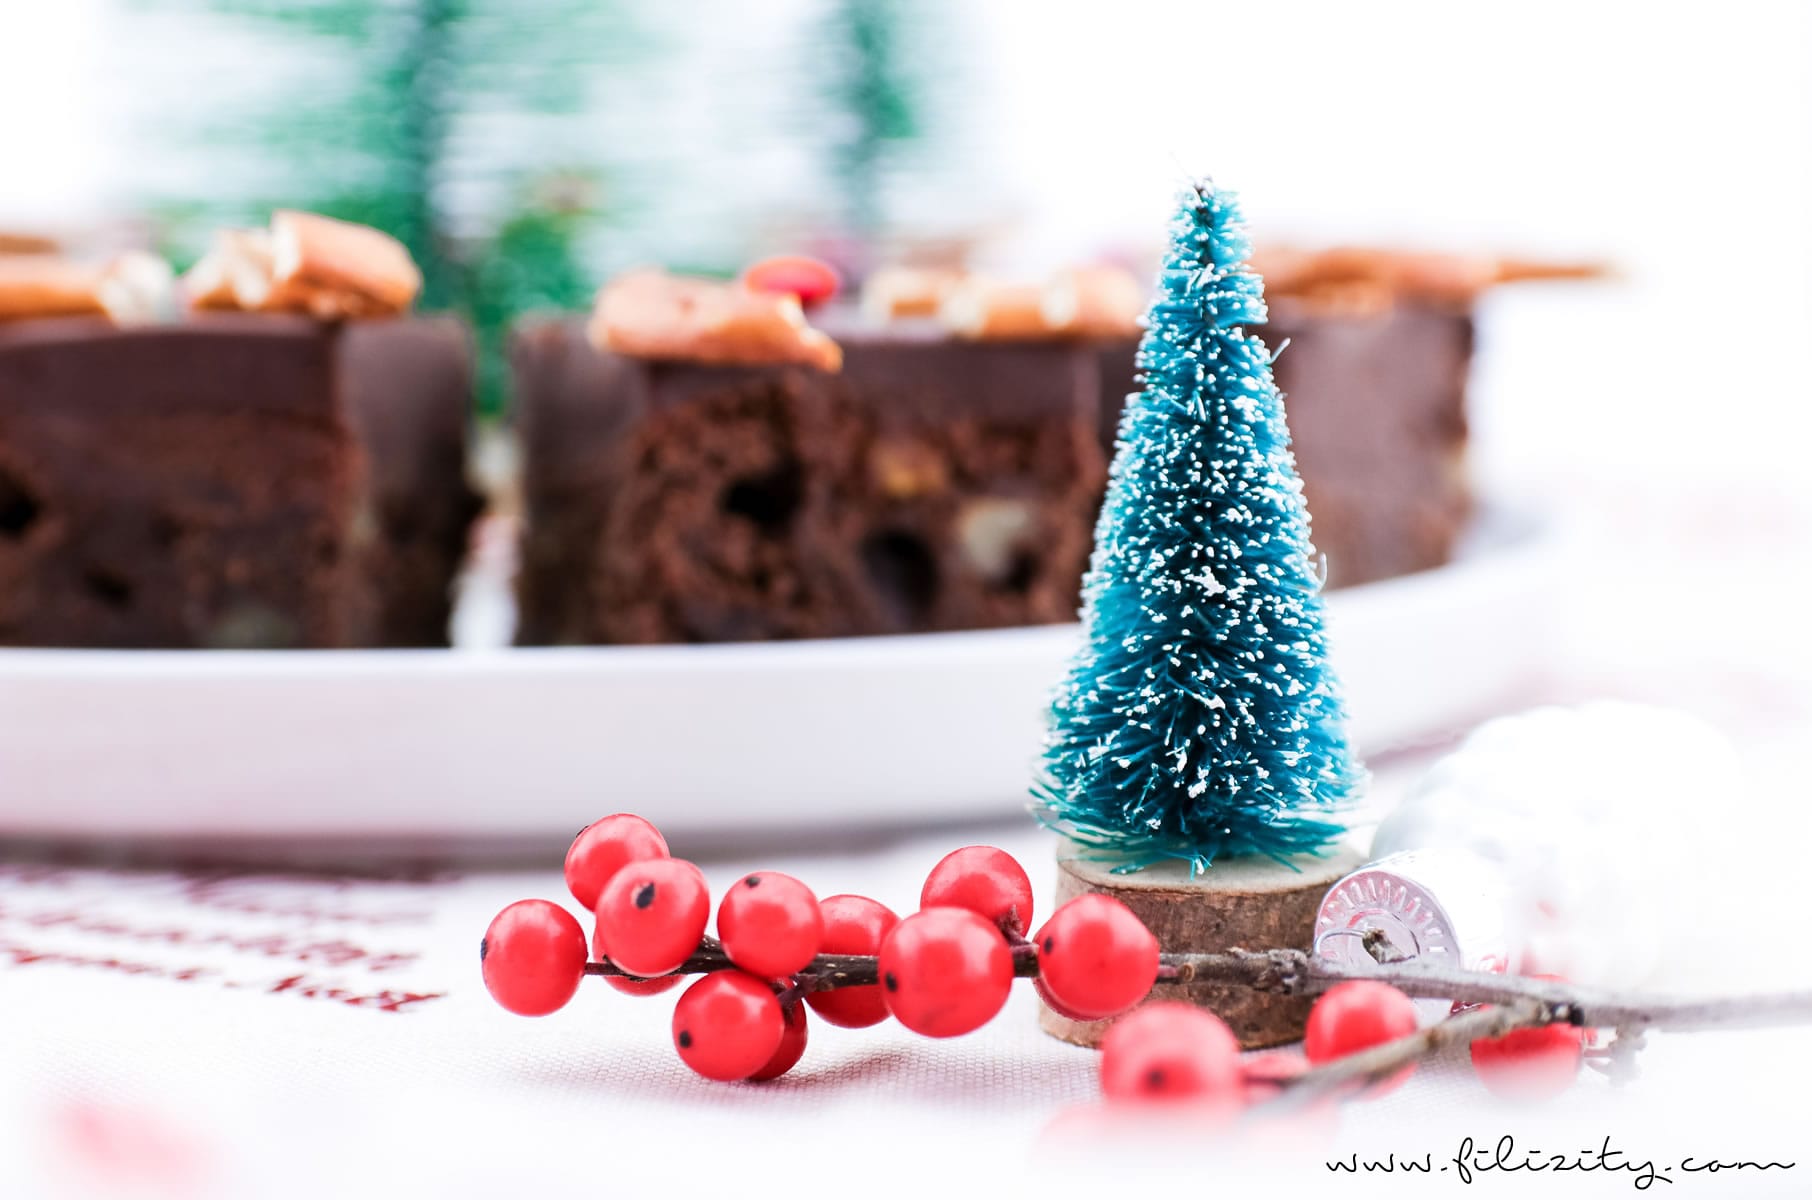 Rezept: Rudolph Brownies – Der schokoladigste Weihnachts-Kuchen (Death by Chocolate mit Smarties und Brezeln) | Filizity.com | Food-Blog aus dem Rheinland #deathbychocolatte #nomatterwhatthequestionischocolateistheanswer #weihnachten #rudolph